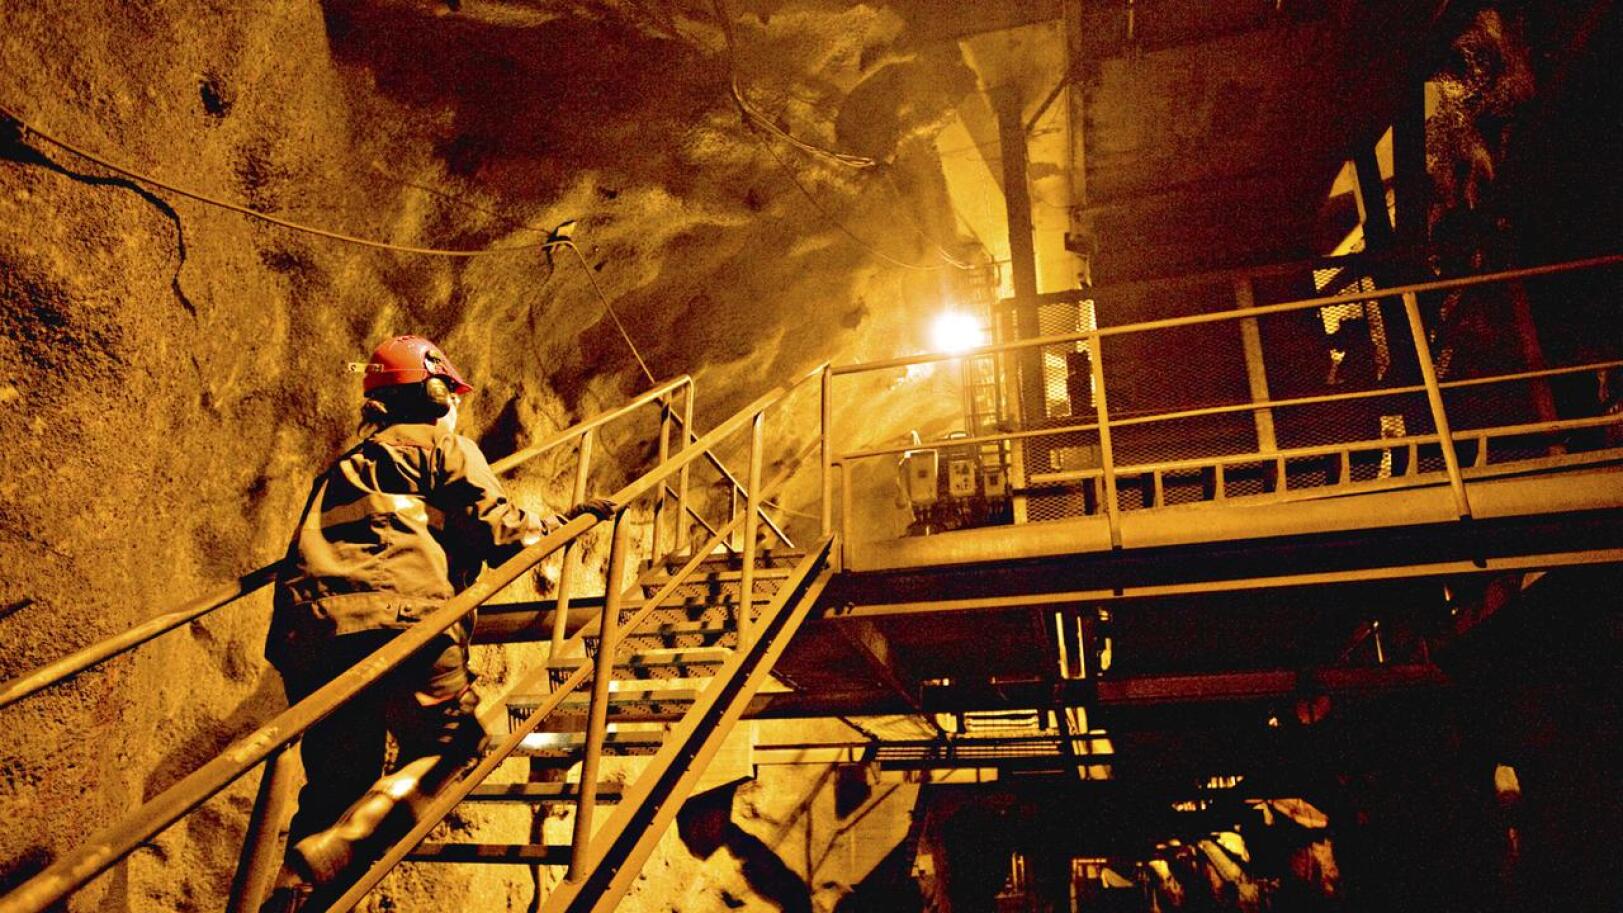 Pyhäsalmen kaivoksen uusiokäyttö otti ison harppauksen eteenpäin, kun Pyhäjärven Callio ja FEBAY tekivät yhteistyösopimuksen. 